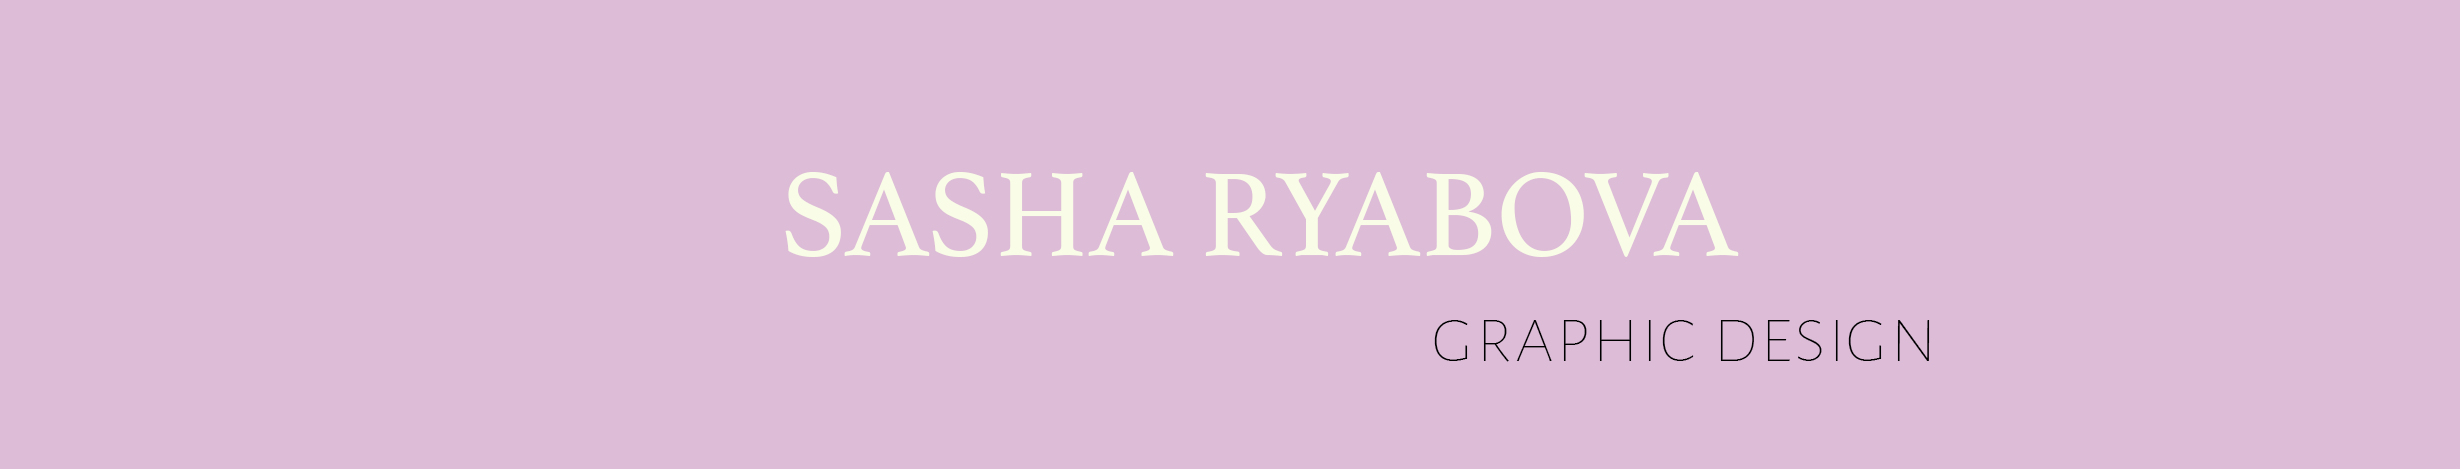 Sasha Ryabova's profile banner